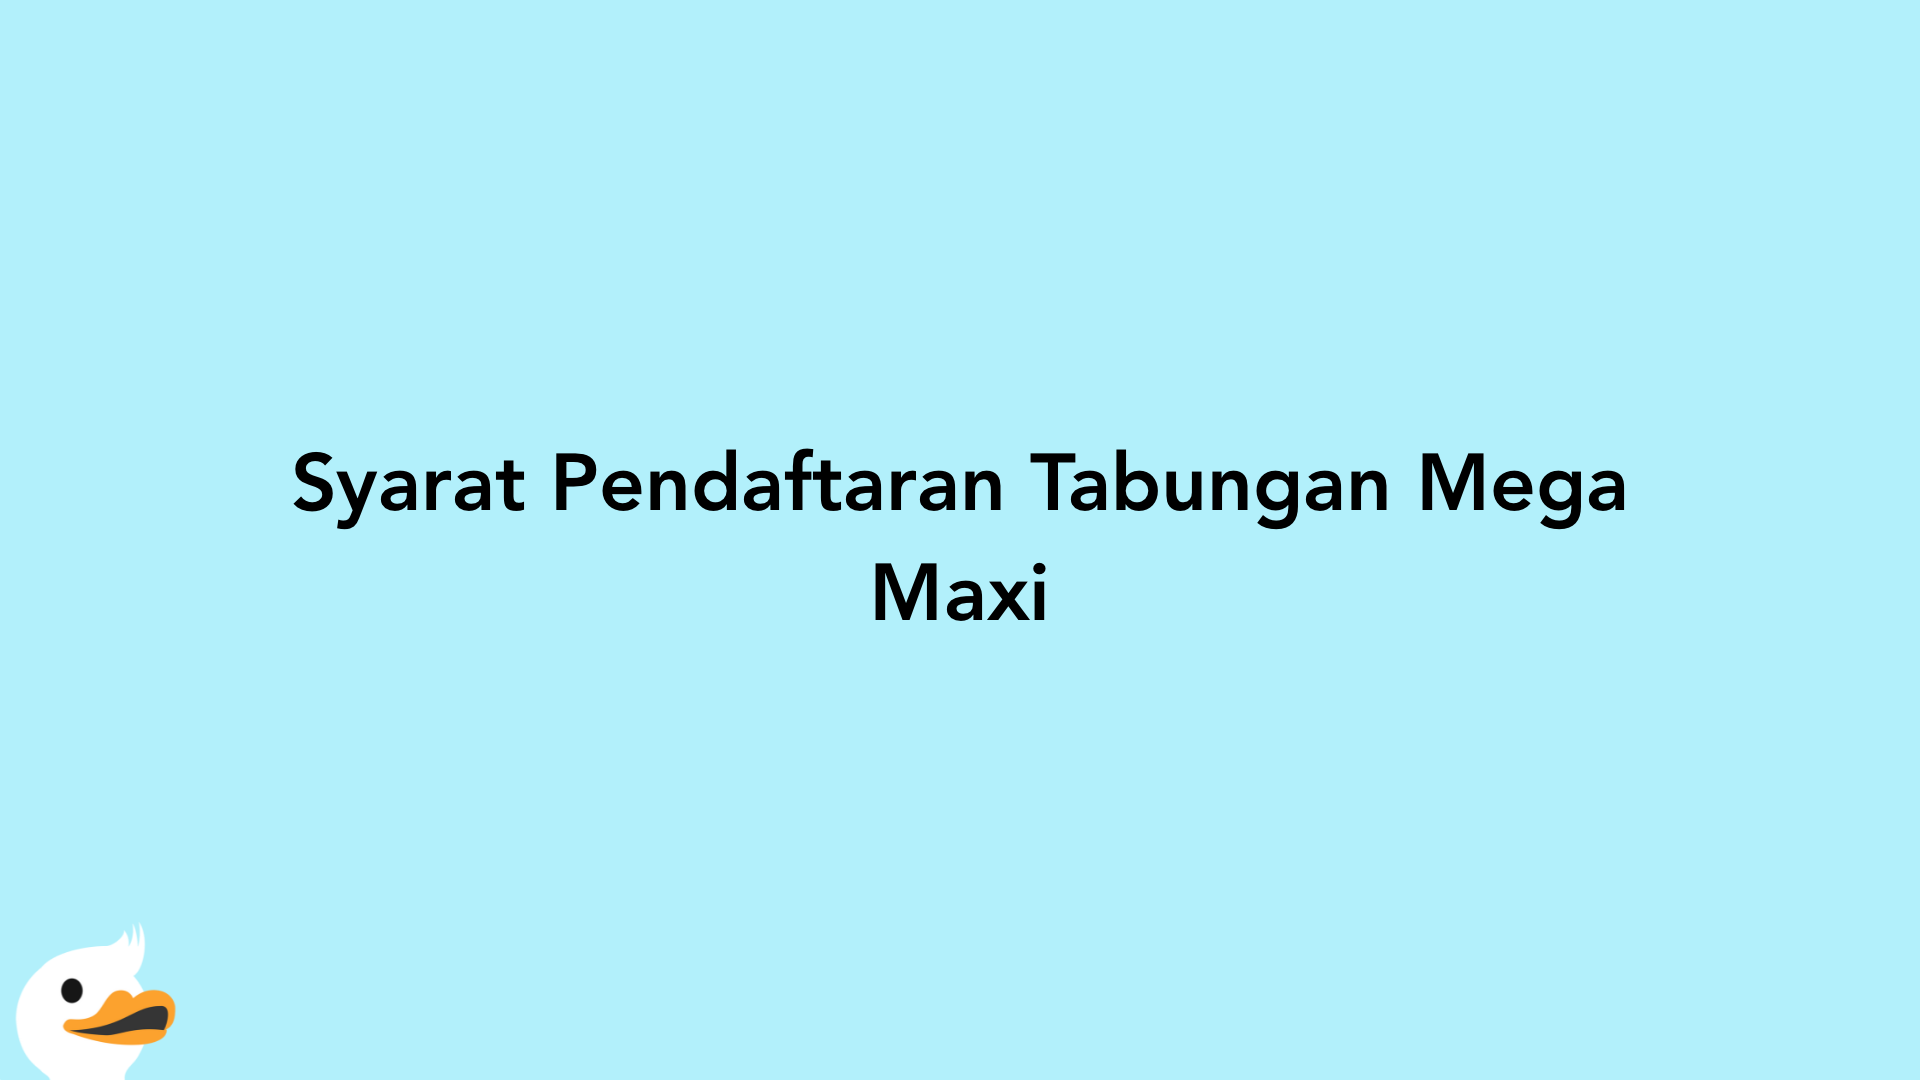 Syarat Pendaftaran Tabungan Mega Maxi